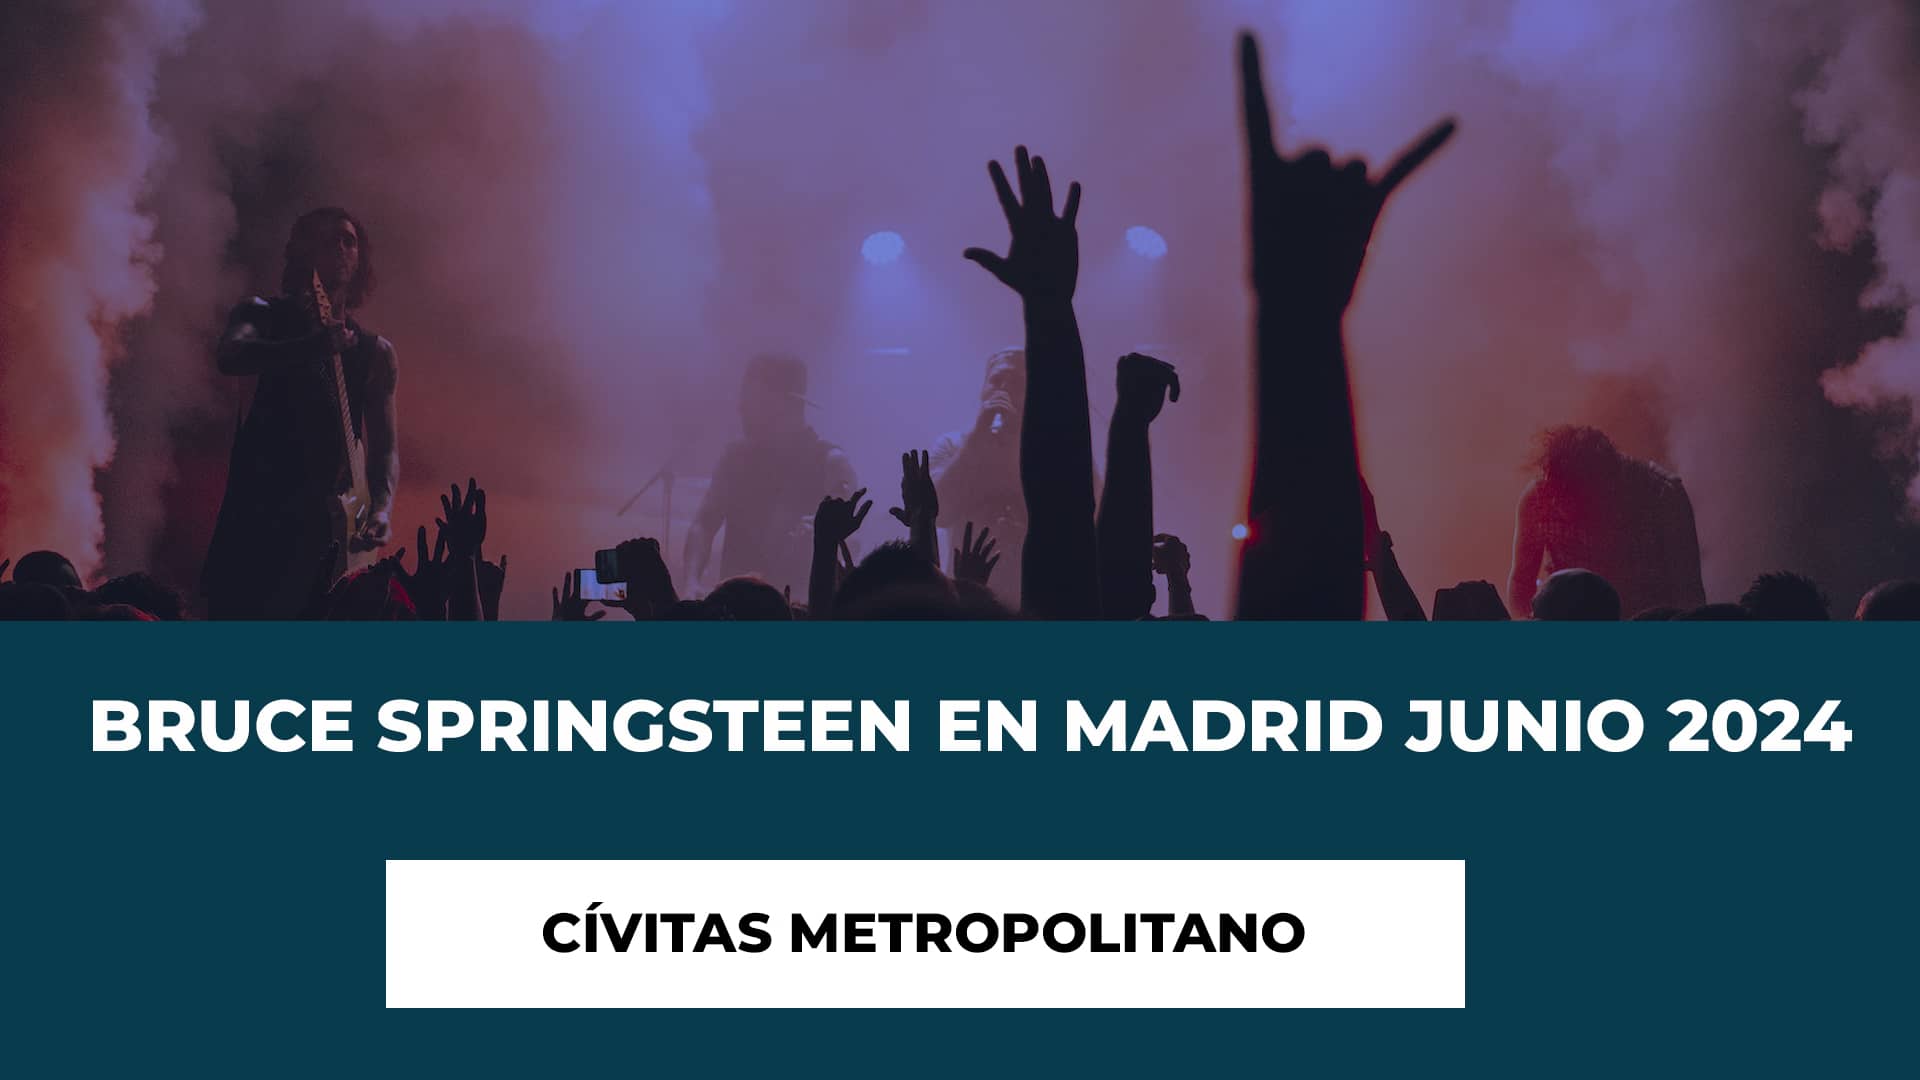 Bruce Springsteen Cívitas Metropolitano 12 y 14 Junio Entradas - Regreso Triunfal - Gira Internacional - Precios y fecha entradas